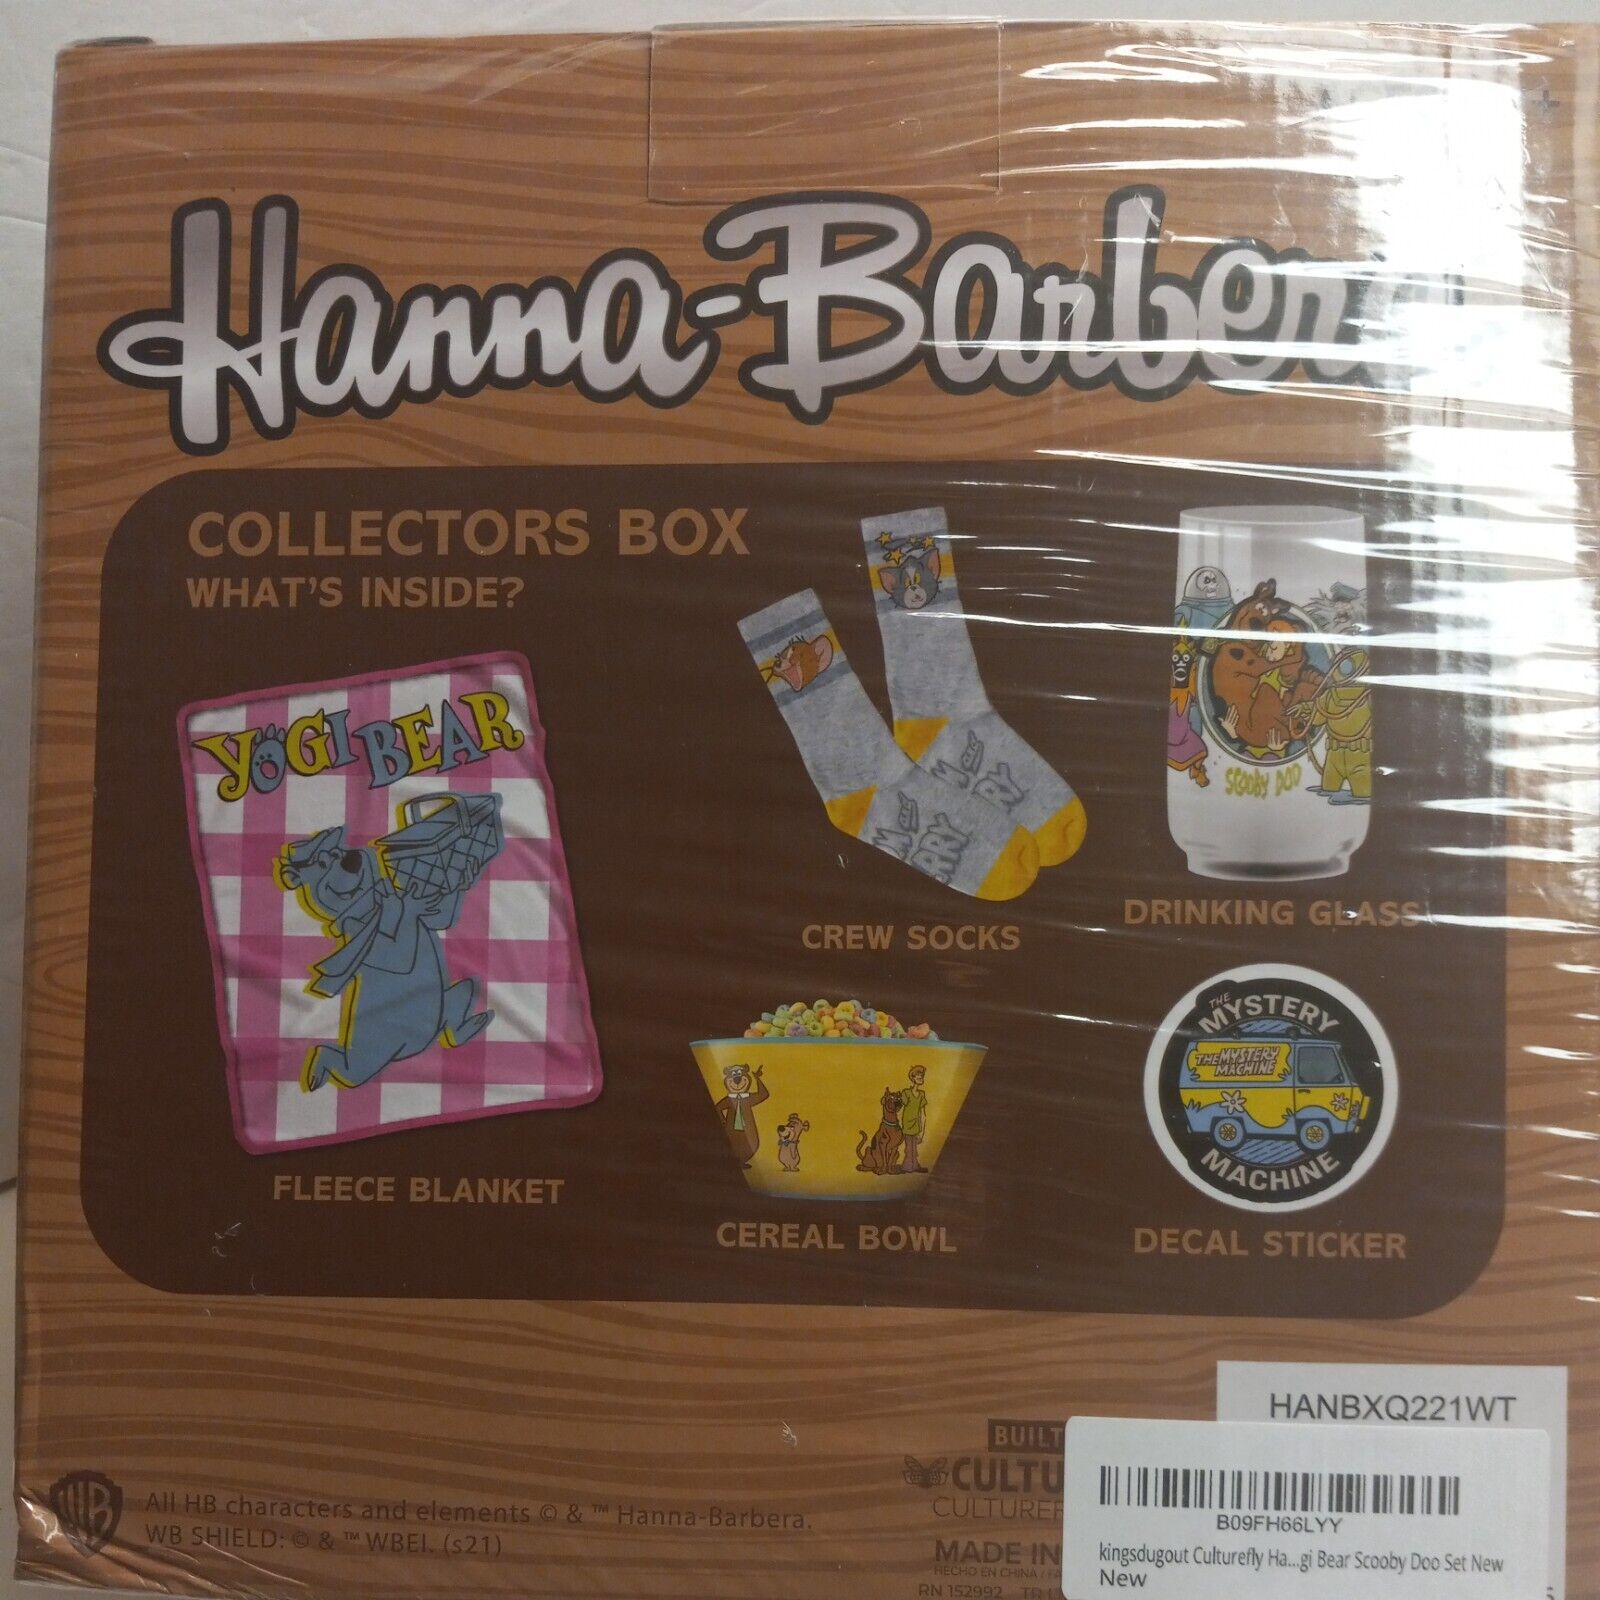 NEW Hanna-Barbera Collectors Box